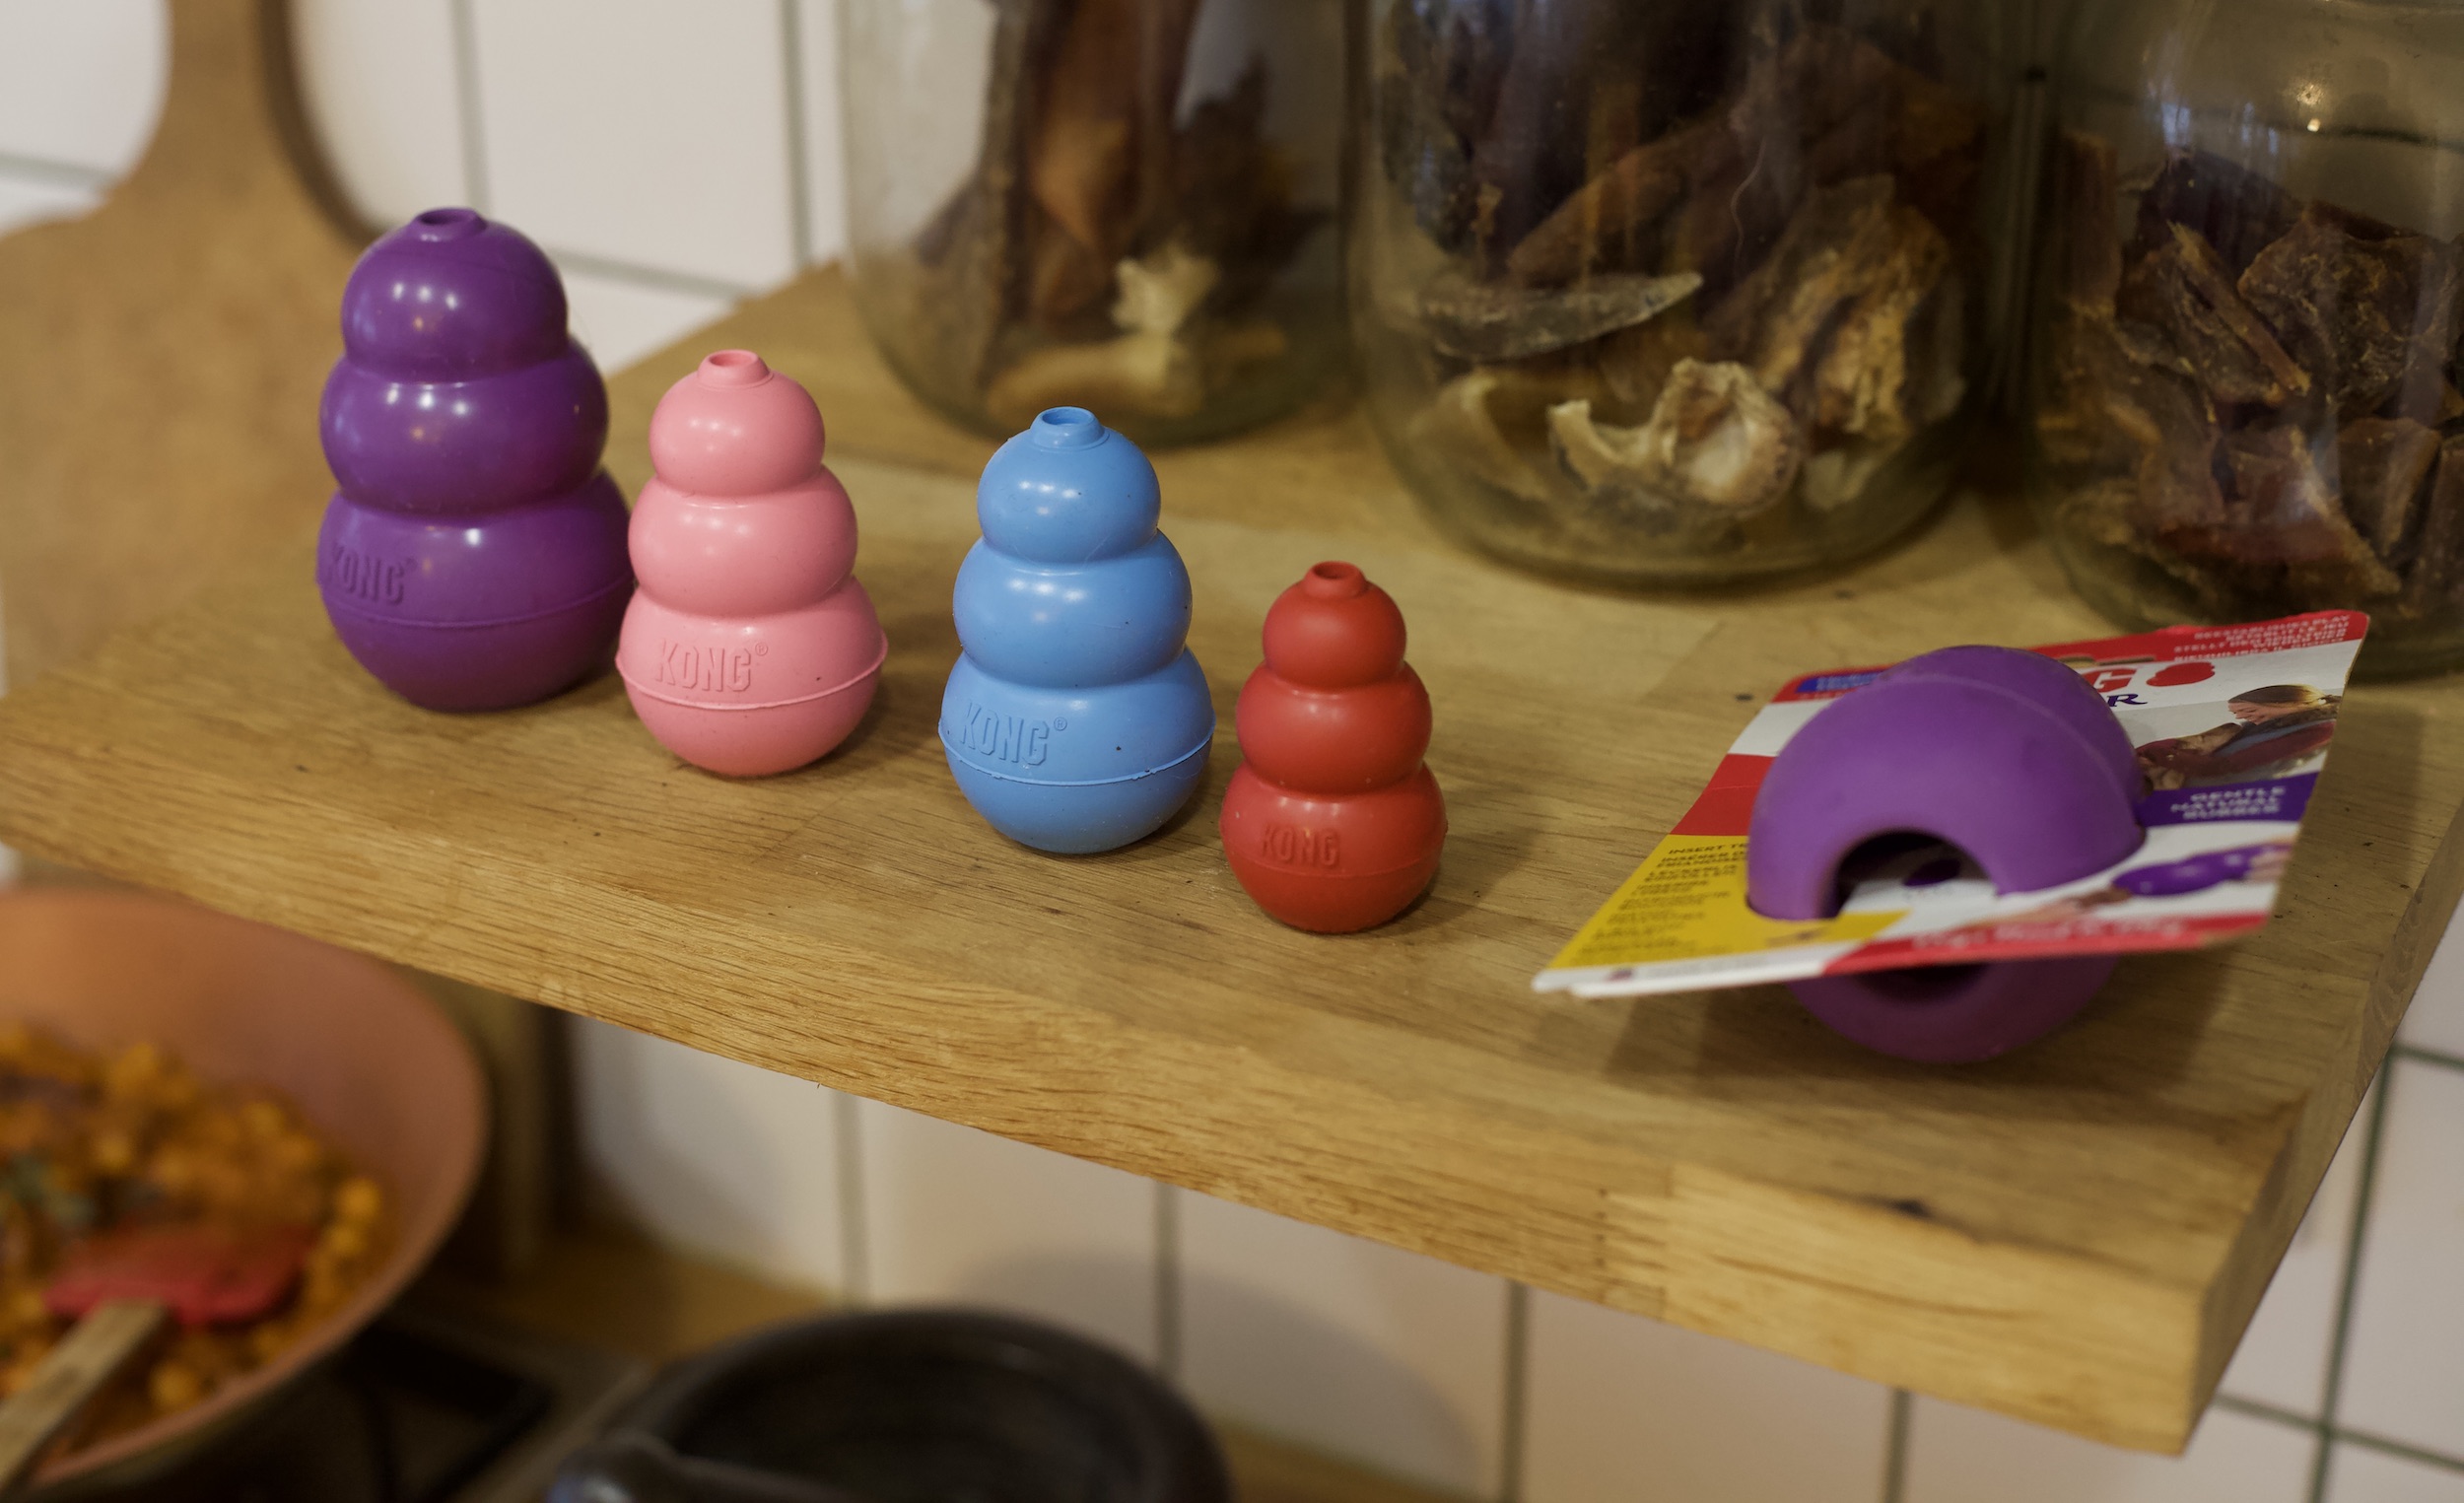 Na kuchennej półce w rzędzie obok siebie stoją cztery zabawki dla psa typu kong. Gumowe gryzaki mają kształt bałwanków, są w różnych rozmiarach i kolorach – fioletowy, różowy, niebieski, czerwony. Ustawione są od największego do najmniejszego.